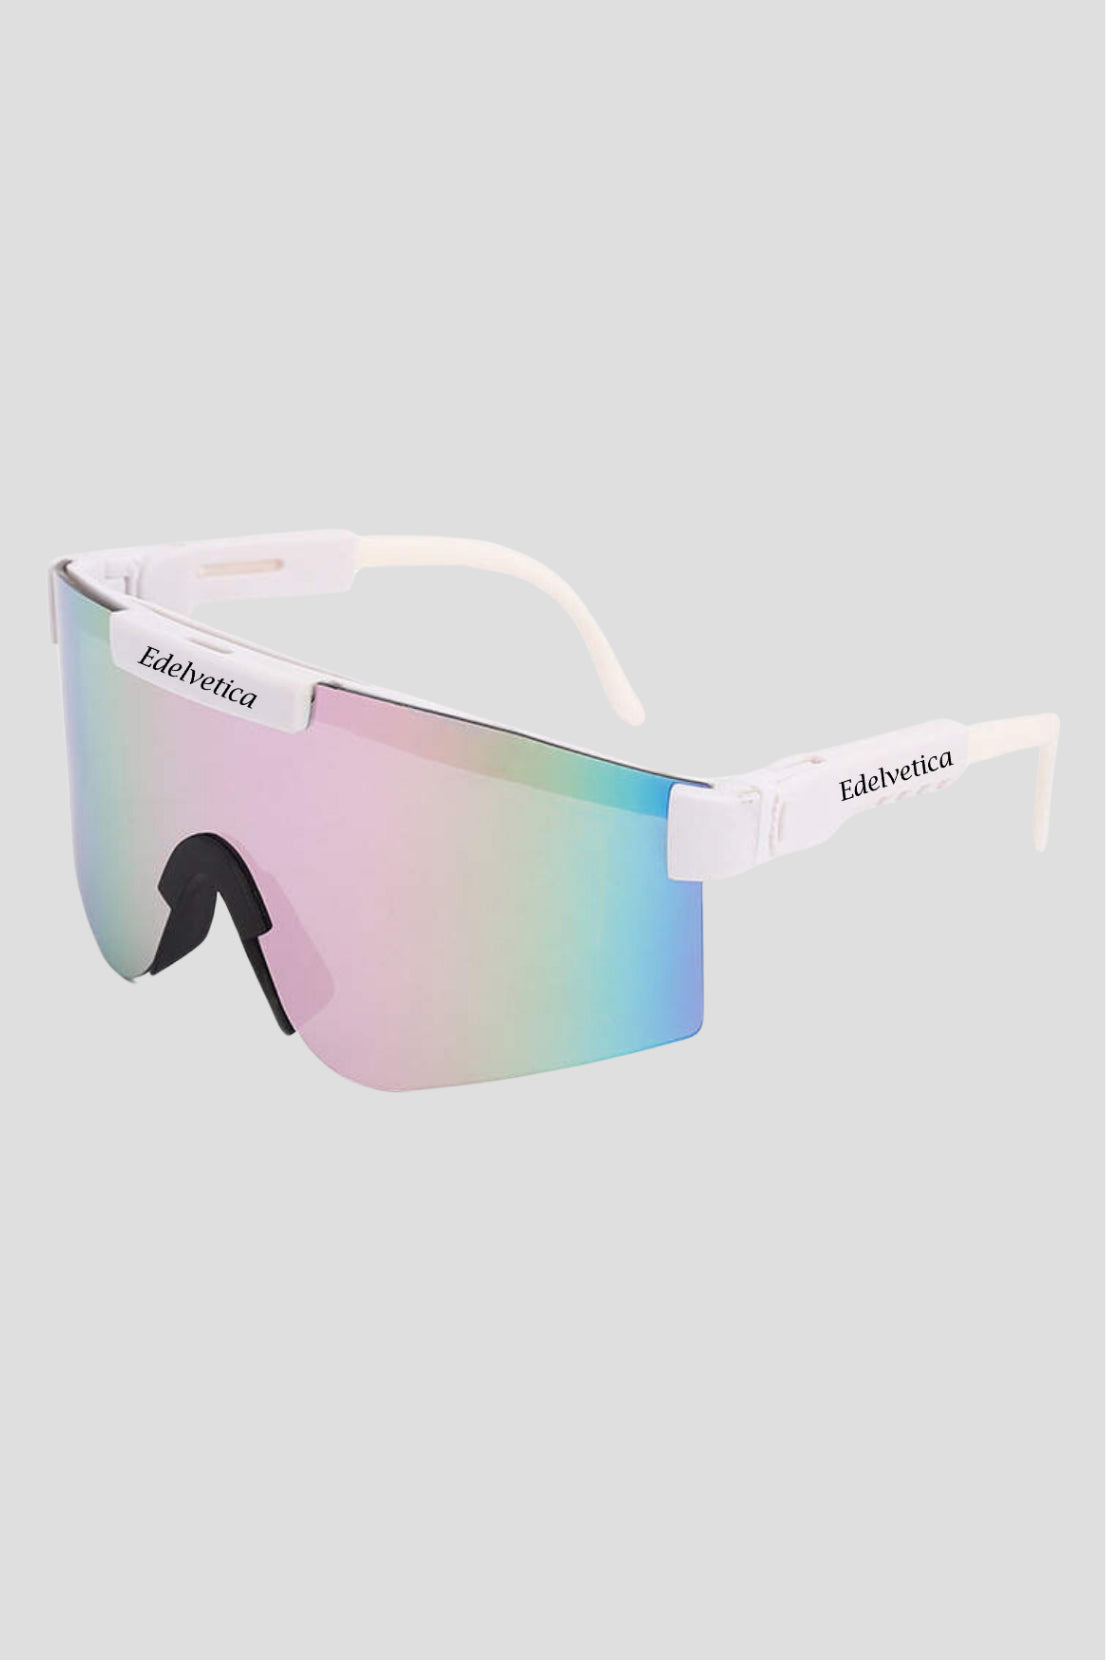 Unisex Sonnenbrille 'Rave' von Edelvetica, ein trendiges und schickes Accessoire. Diese Sonnenbrille zeichnet sich durch ihr modernes Design und klare Linien aus, perfekt für modebewusste Träger. Sie bietet sowohl Stil als auch Schutz und eignet sich ideal für verschiedene Outdoor-Aktivitäten und Freizeitanlässe.